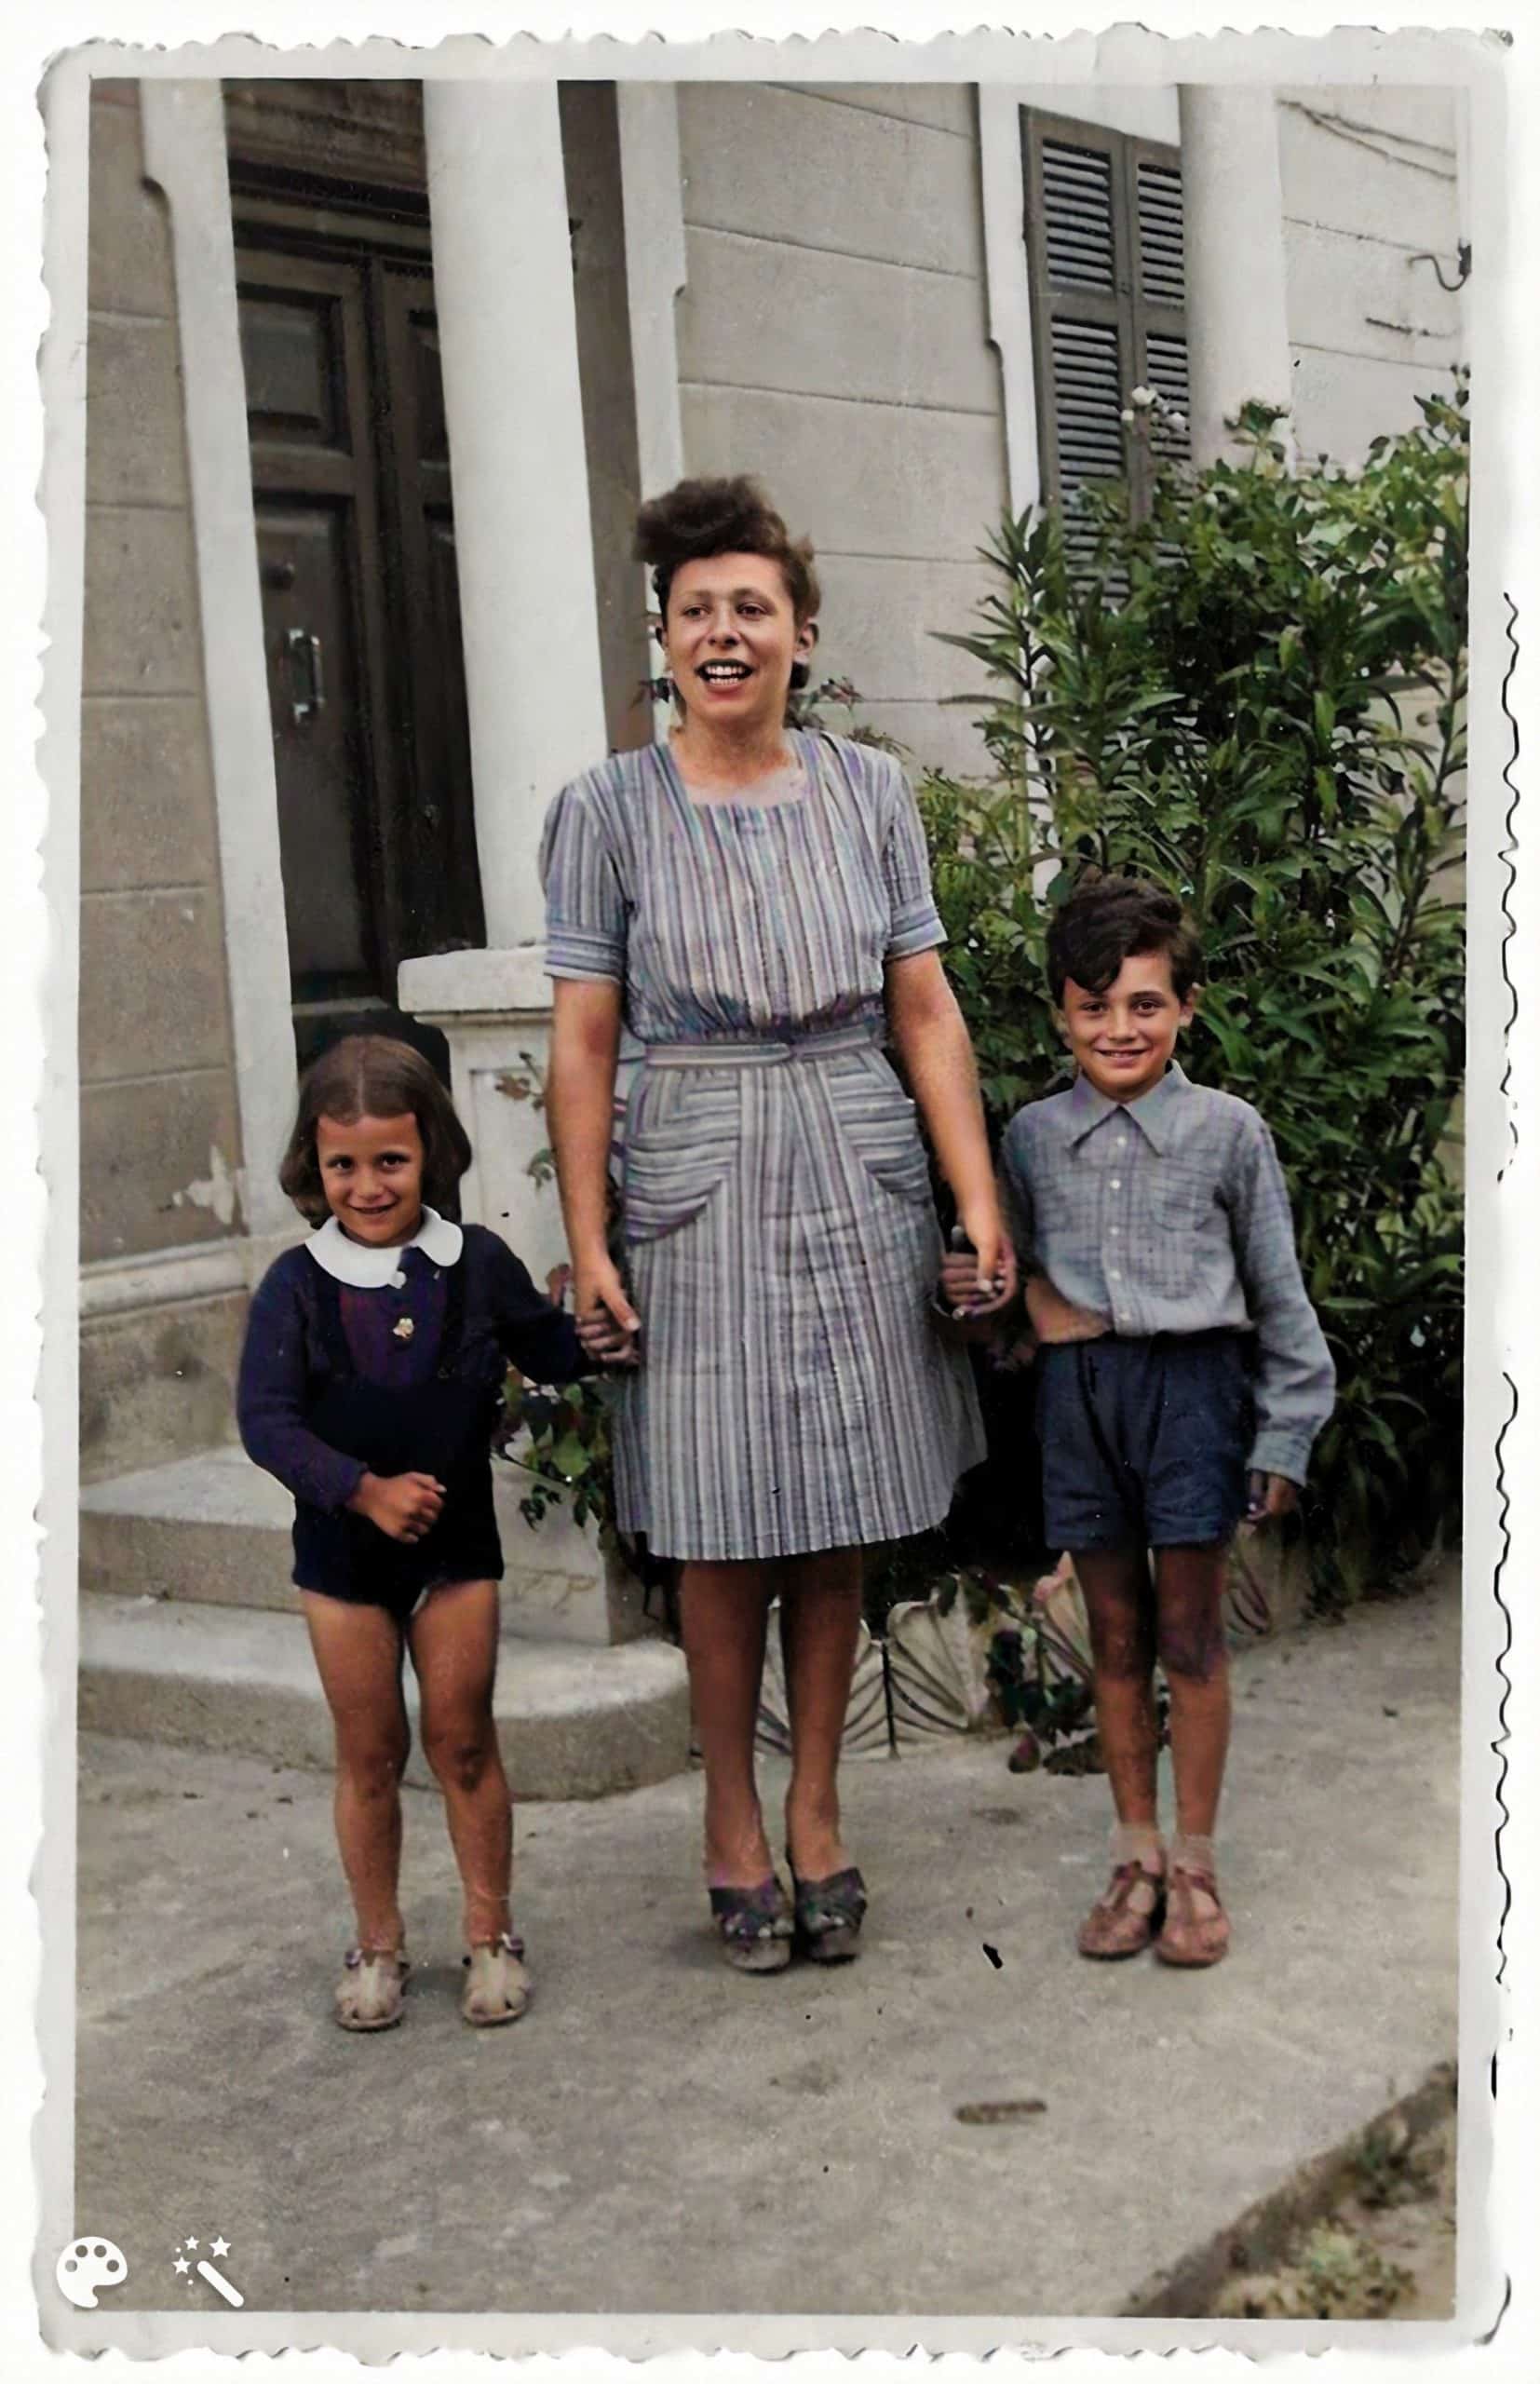 לינה, סבתה של ניקולטה, עם אחיה הקטן והדודנית שלה. התמונה נצבעה ושופרה על-ידי MyHeritage